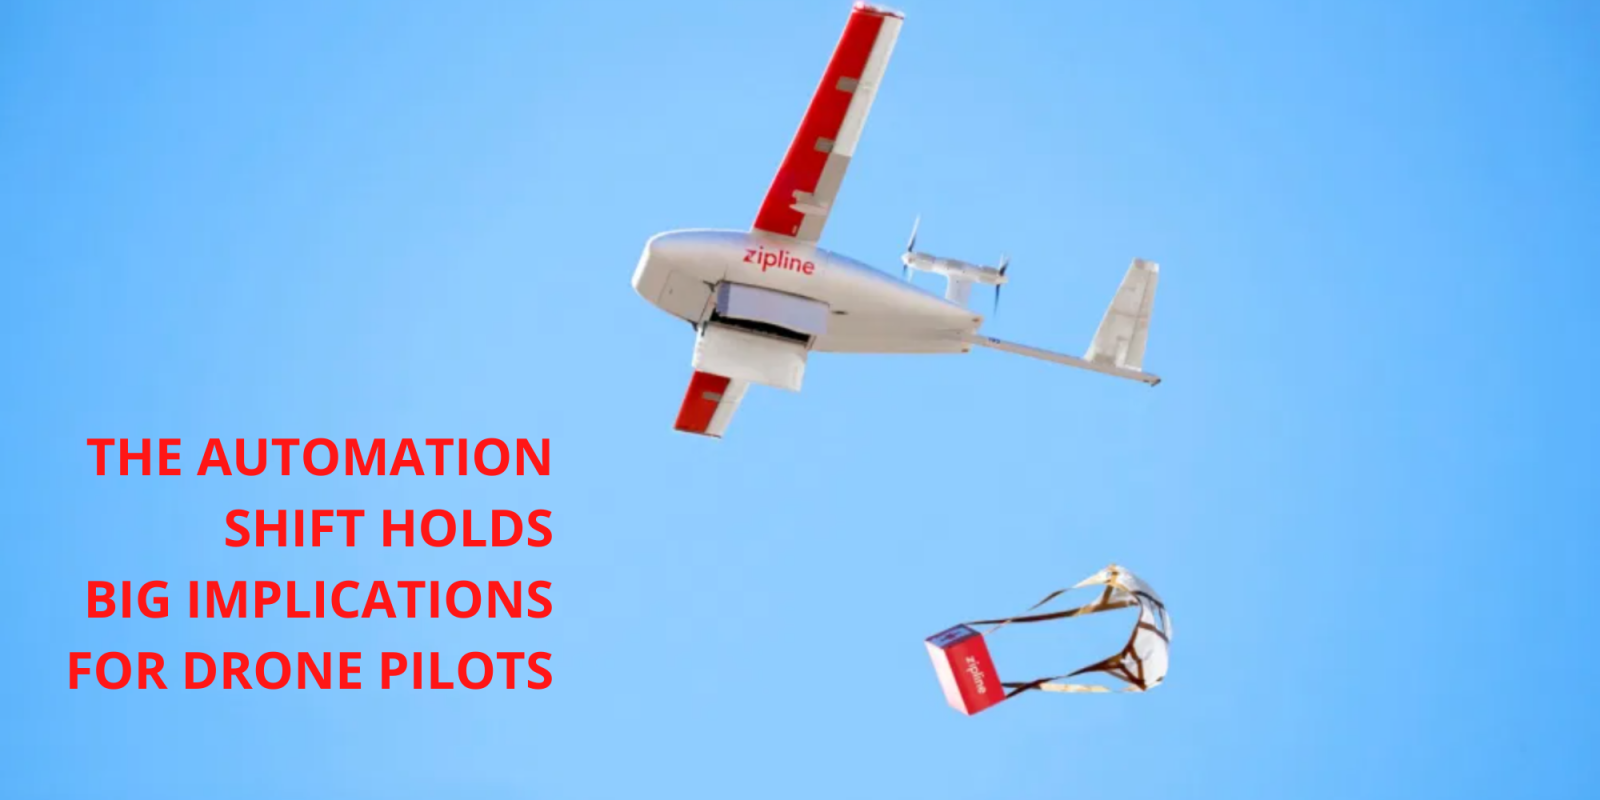 Enterprise drone pilot automation